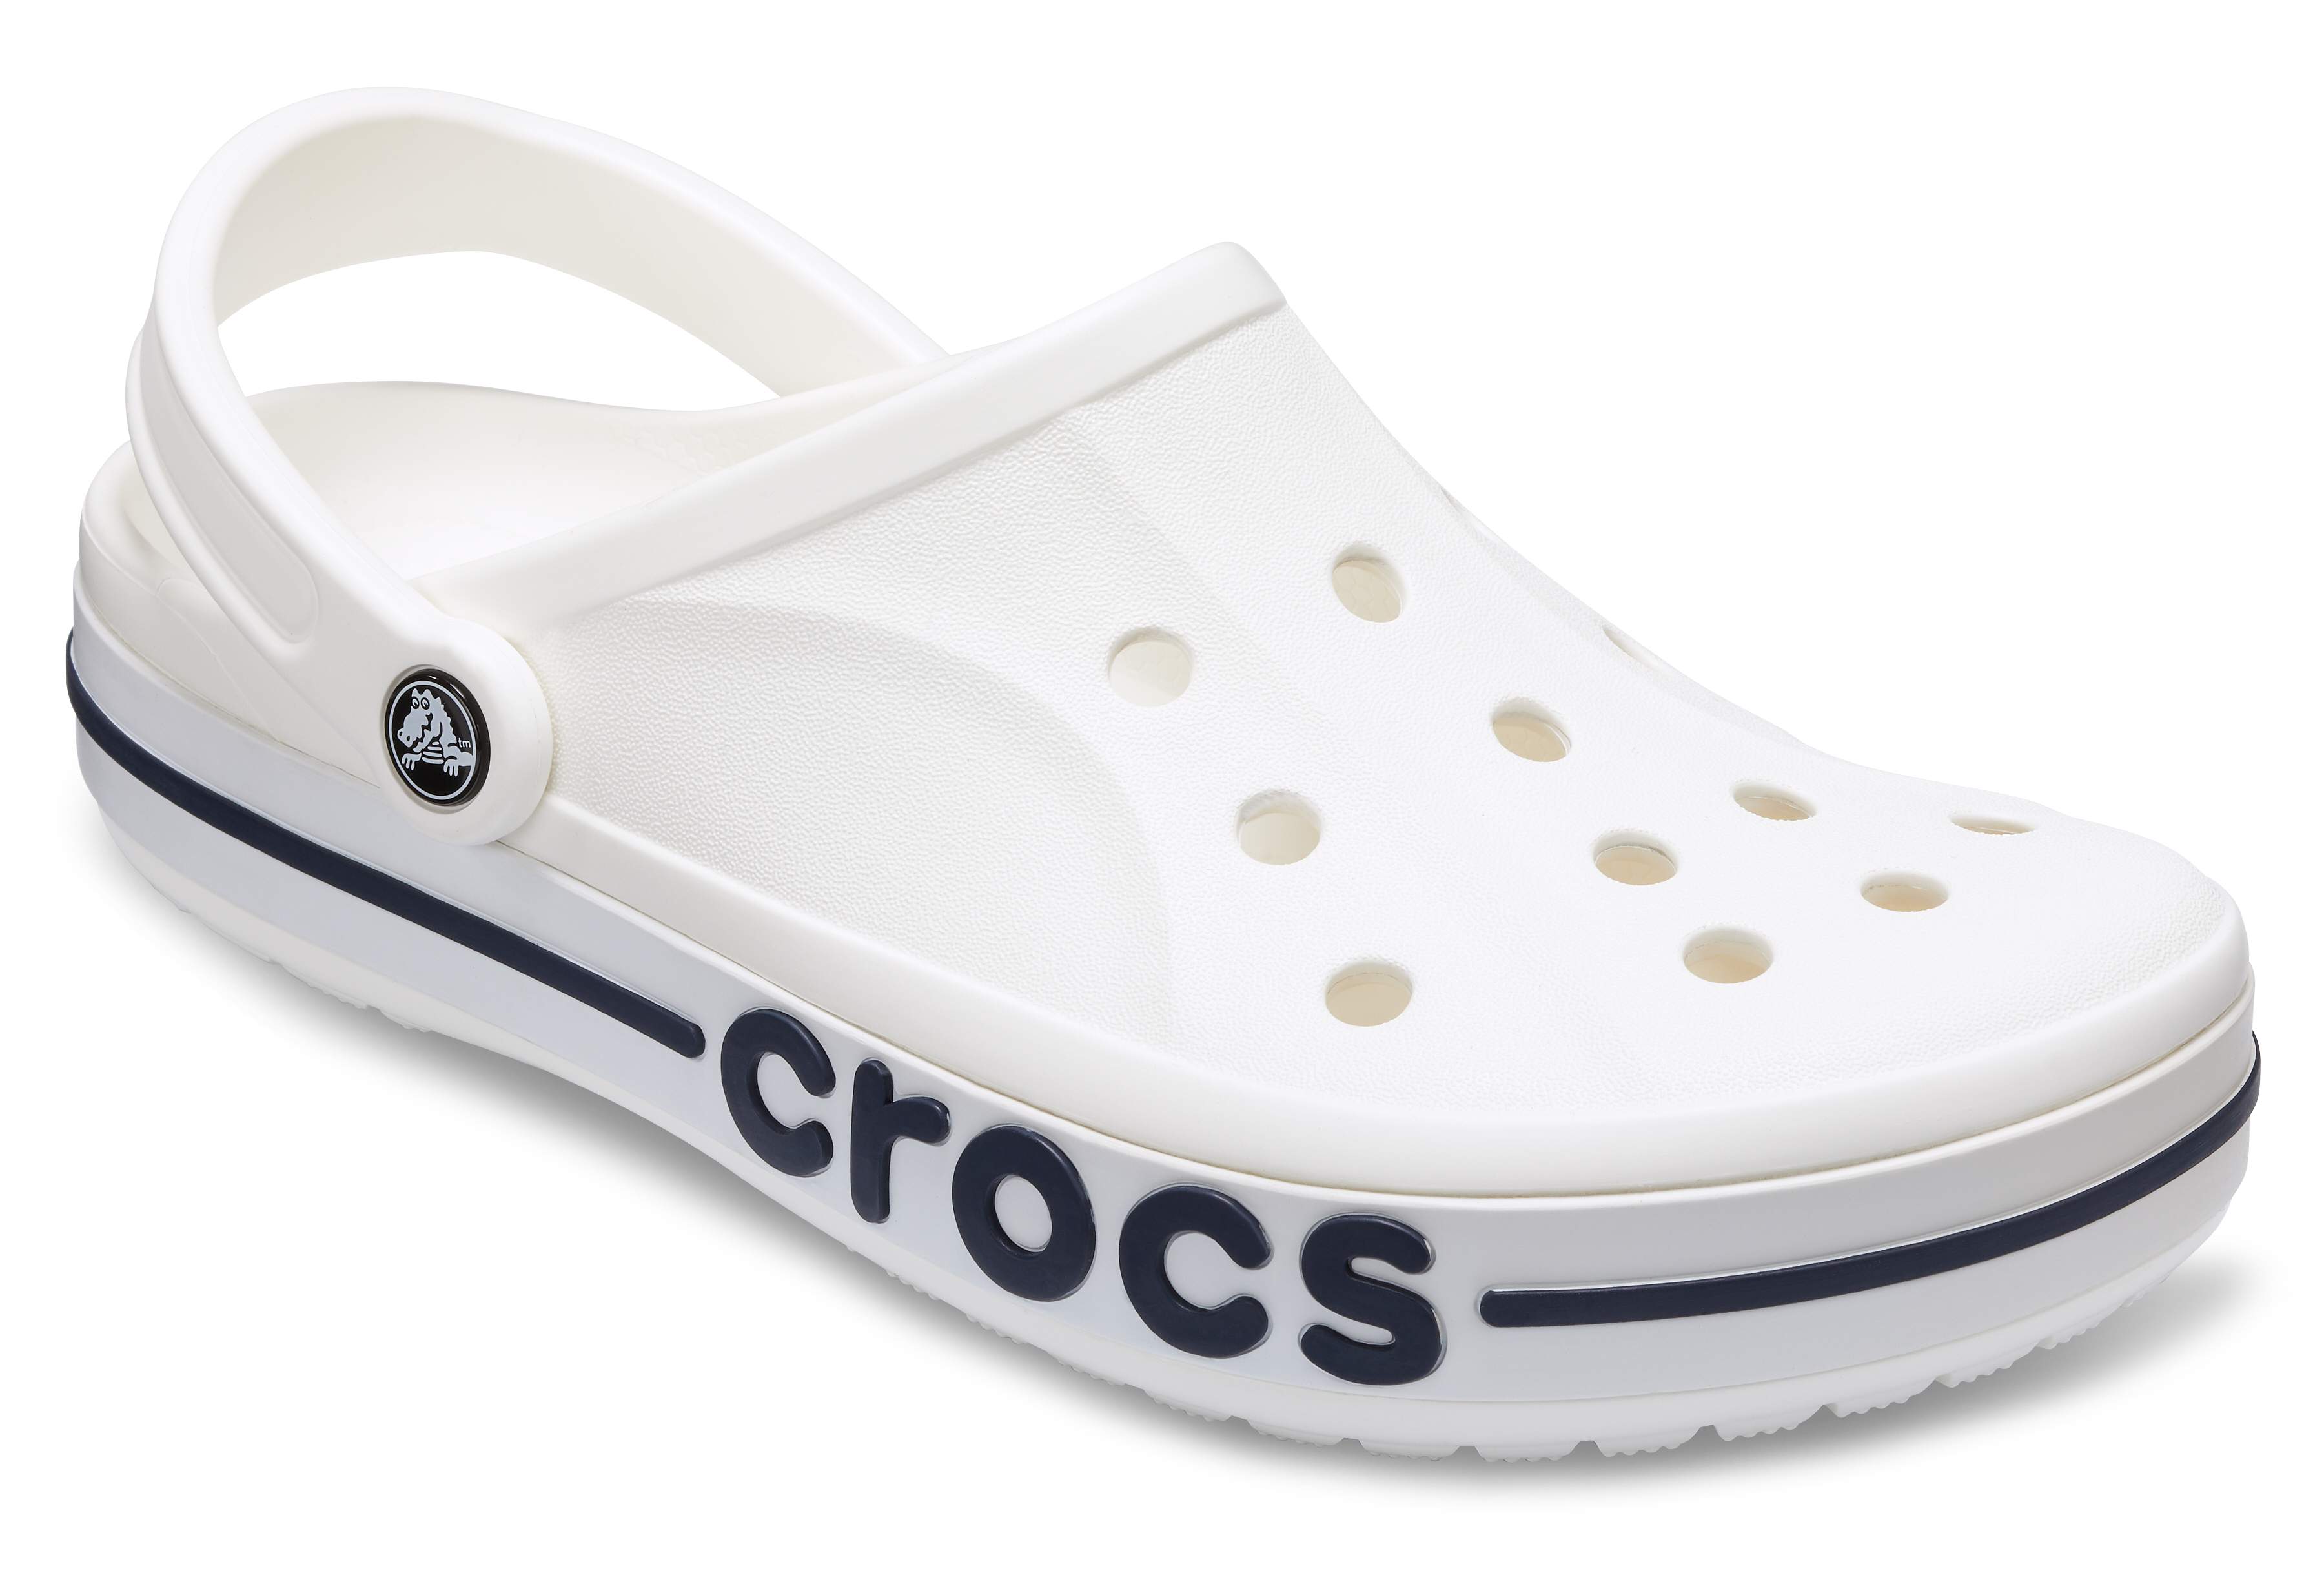 size 4 white crocs